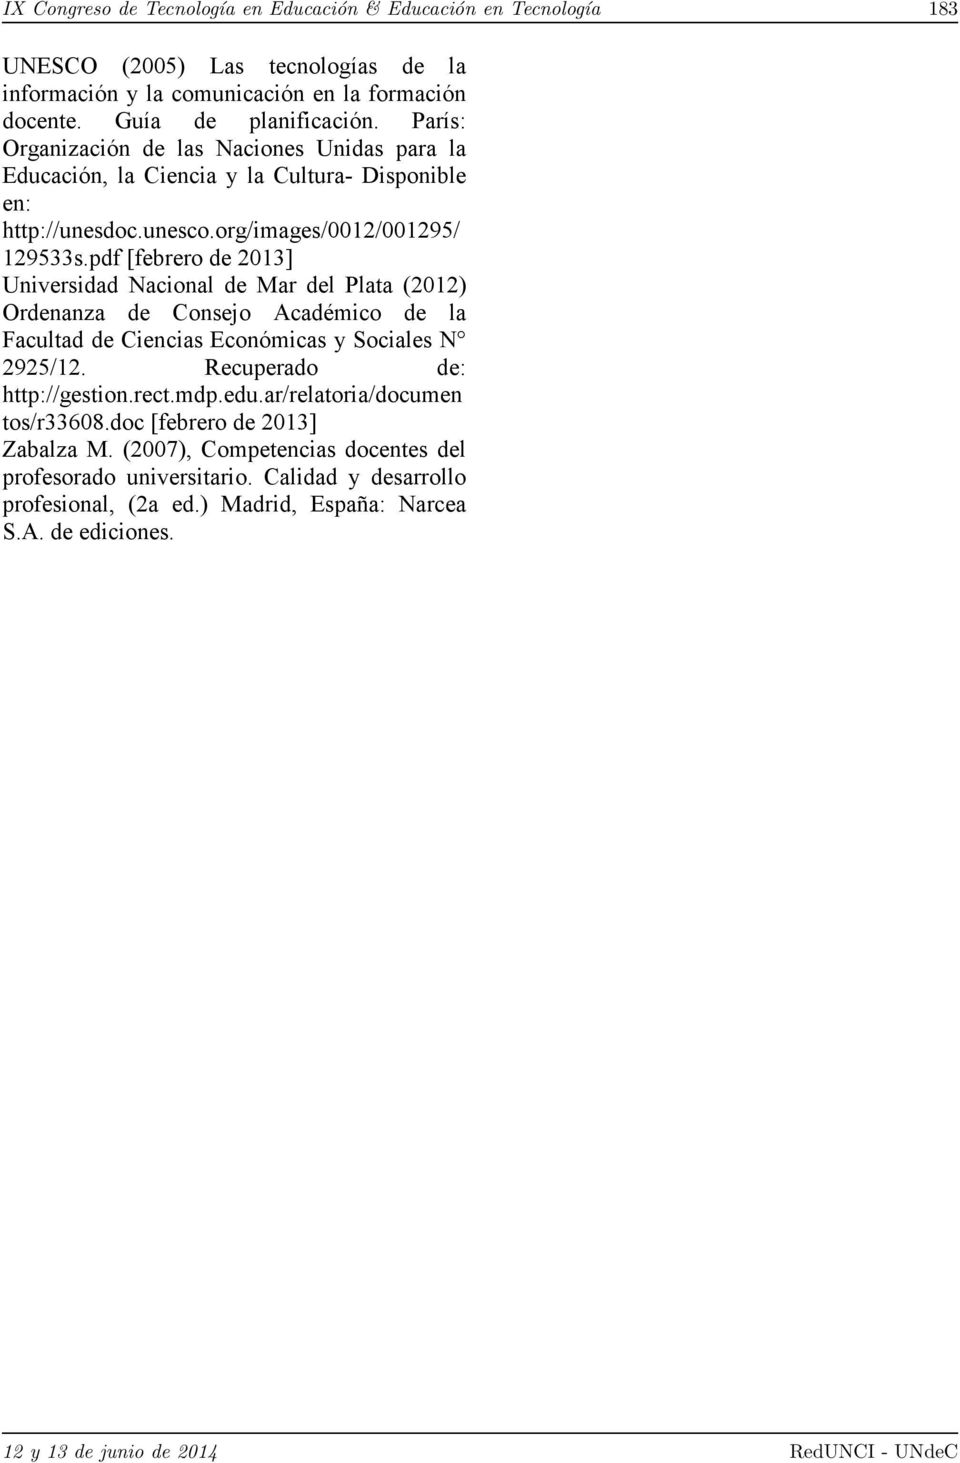 pdf [febrero de 2013] Universidad Nacional de Mar del Plata (2012) Ordenanza de Consejo Académico de la Facultad de Ciencias Económicas y Sociales N 2925/12. Recuperado de: http://gestion.